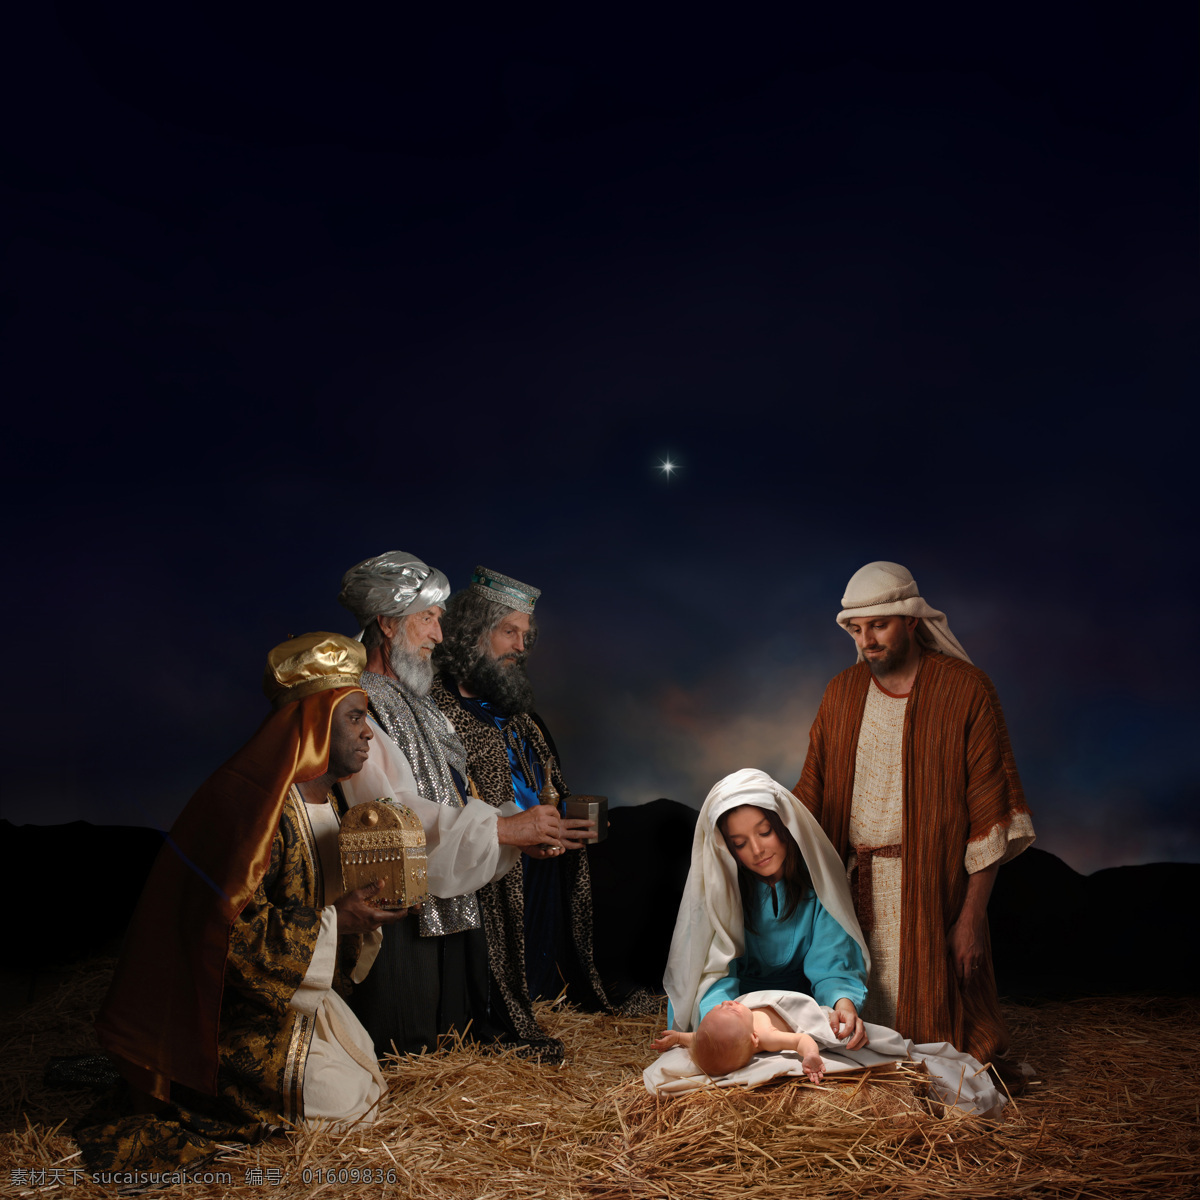 圣诞节 油画 节日素材 基督教 耶稣 圣母 宗教 圣诞节图片 生活百科